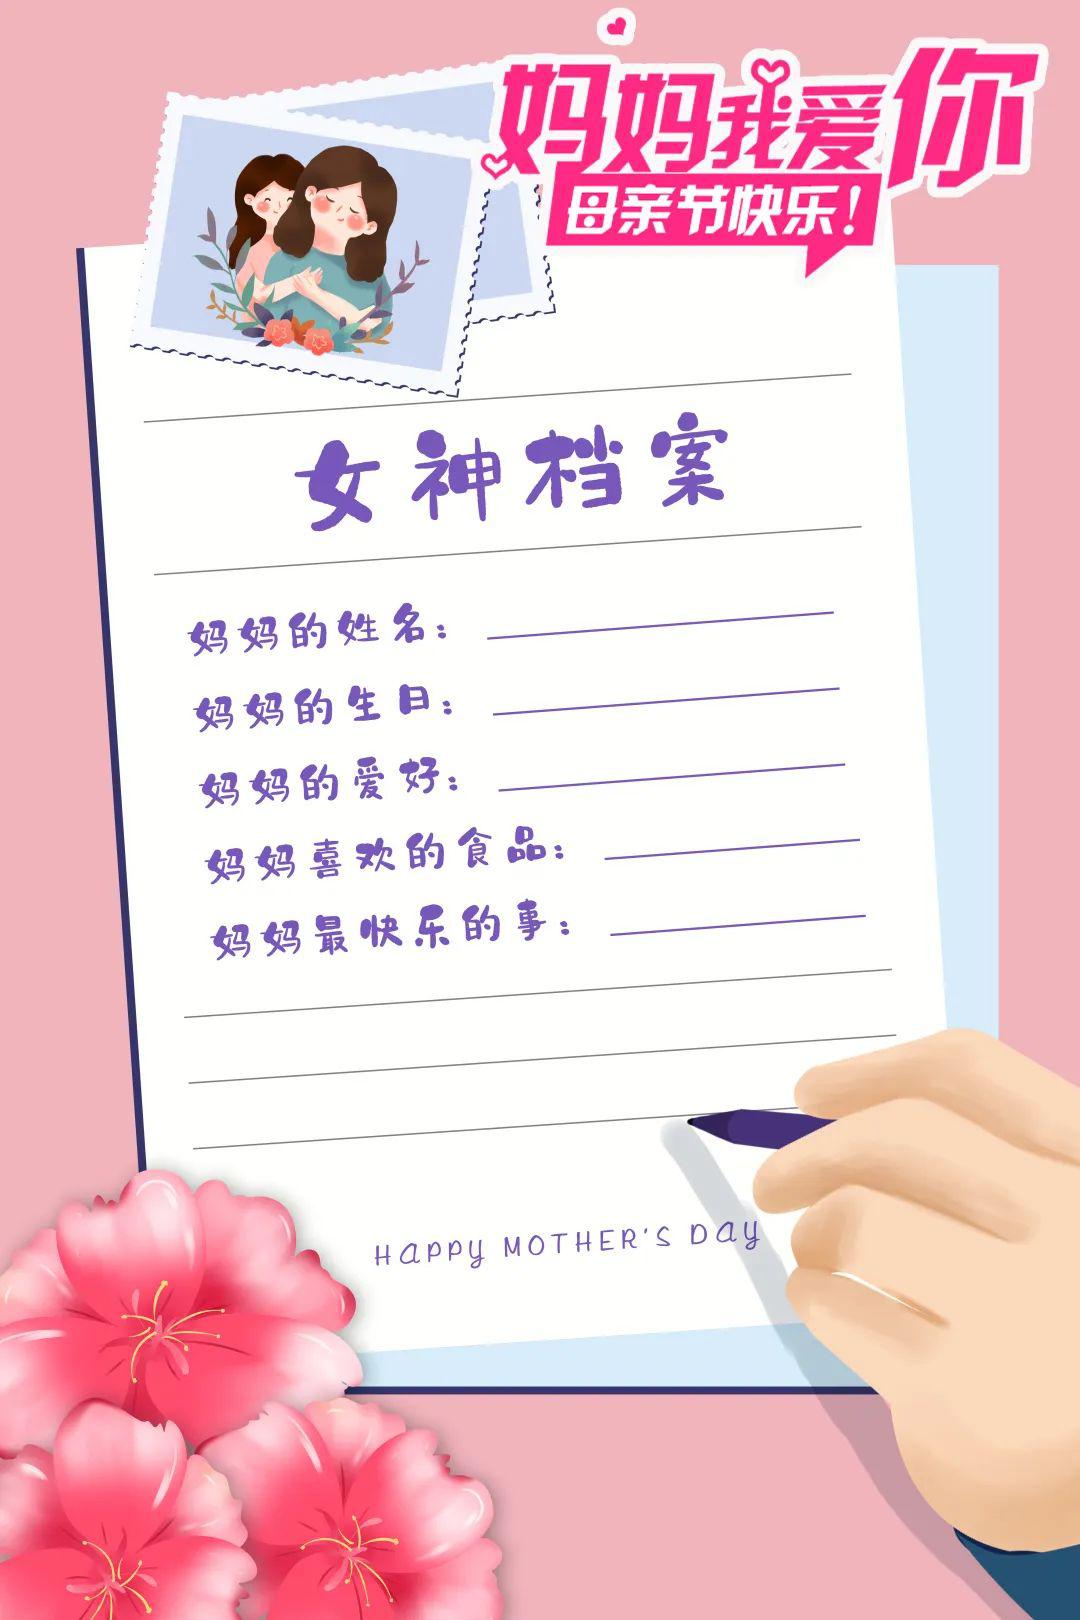 用一张精致的卡片自制"感恩母亲亲情档案",记录下妈妈的姓名,妈妈的